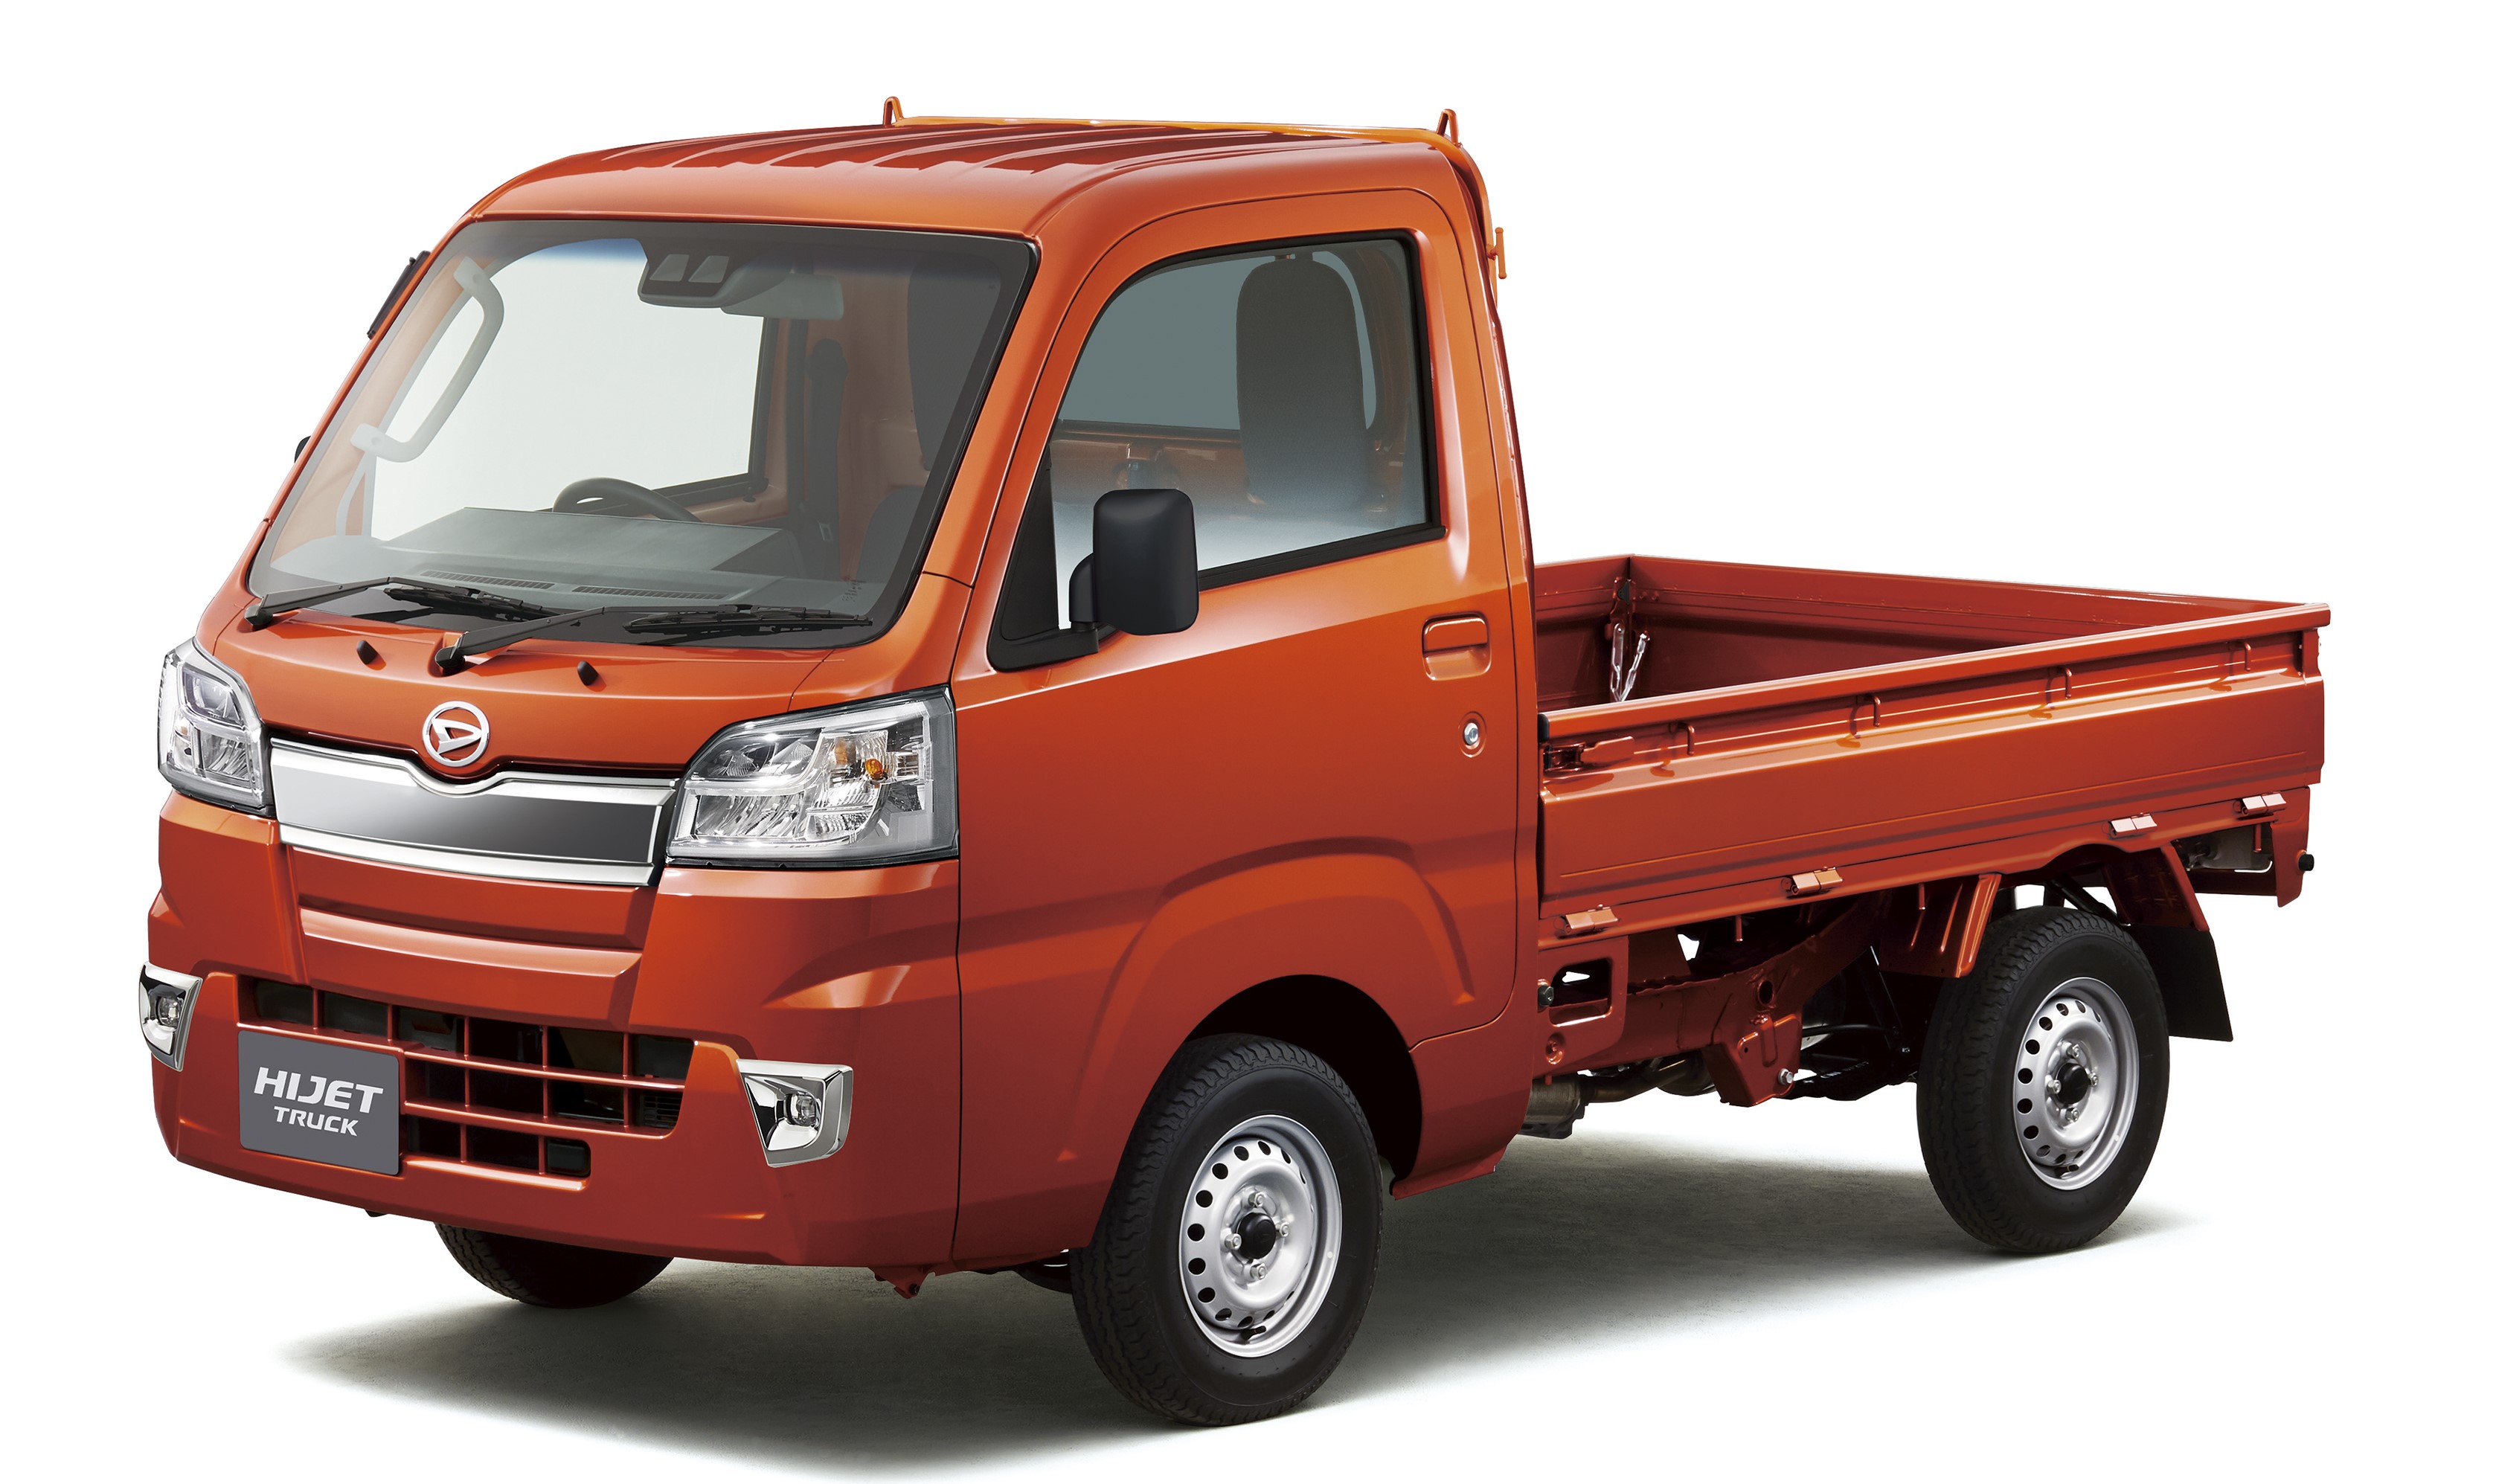 ダイハツ 軽商用車 ハイゼット トラック を一部改良 ダイハツ工業株式会社のプレスリリース